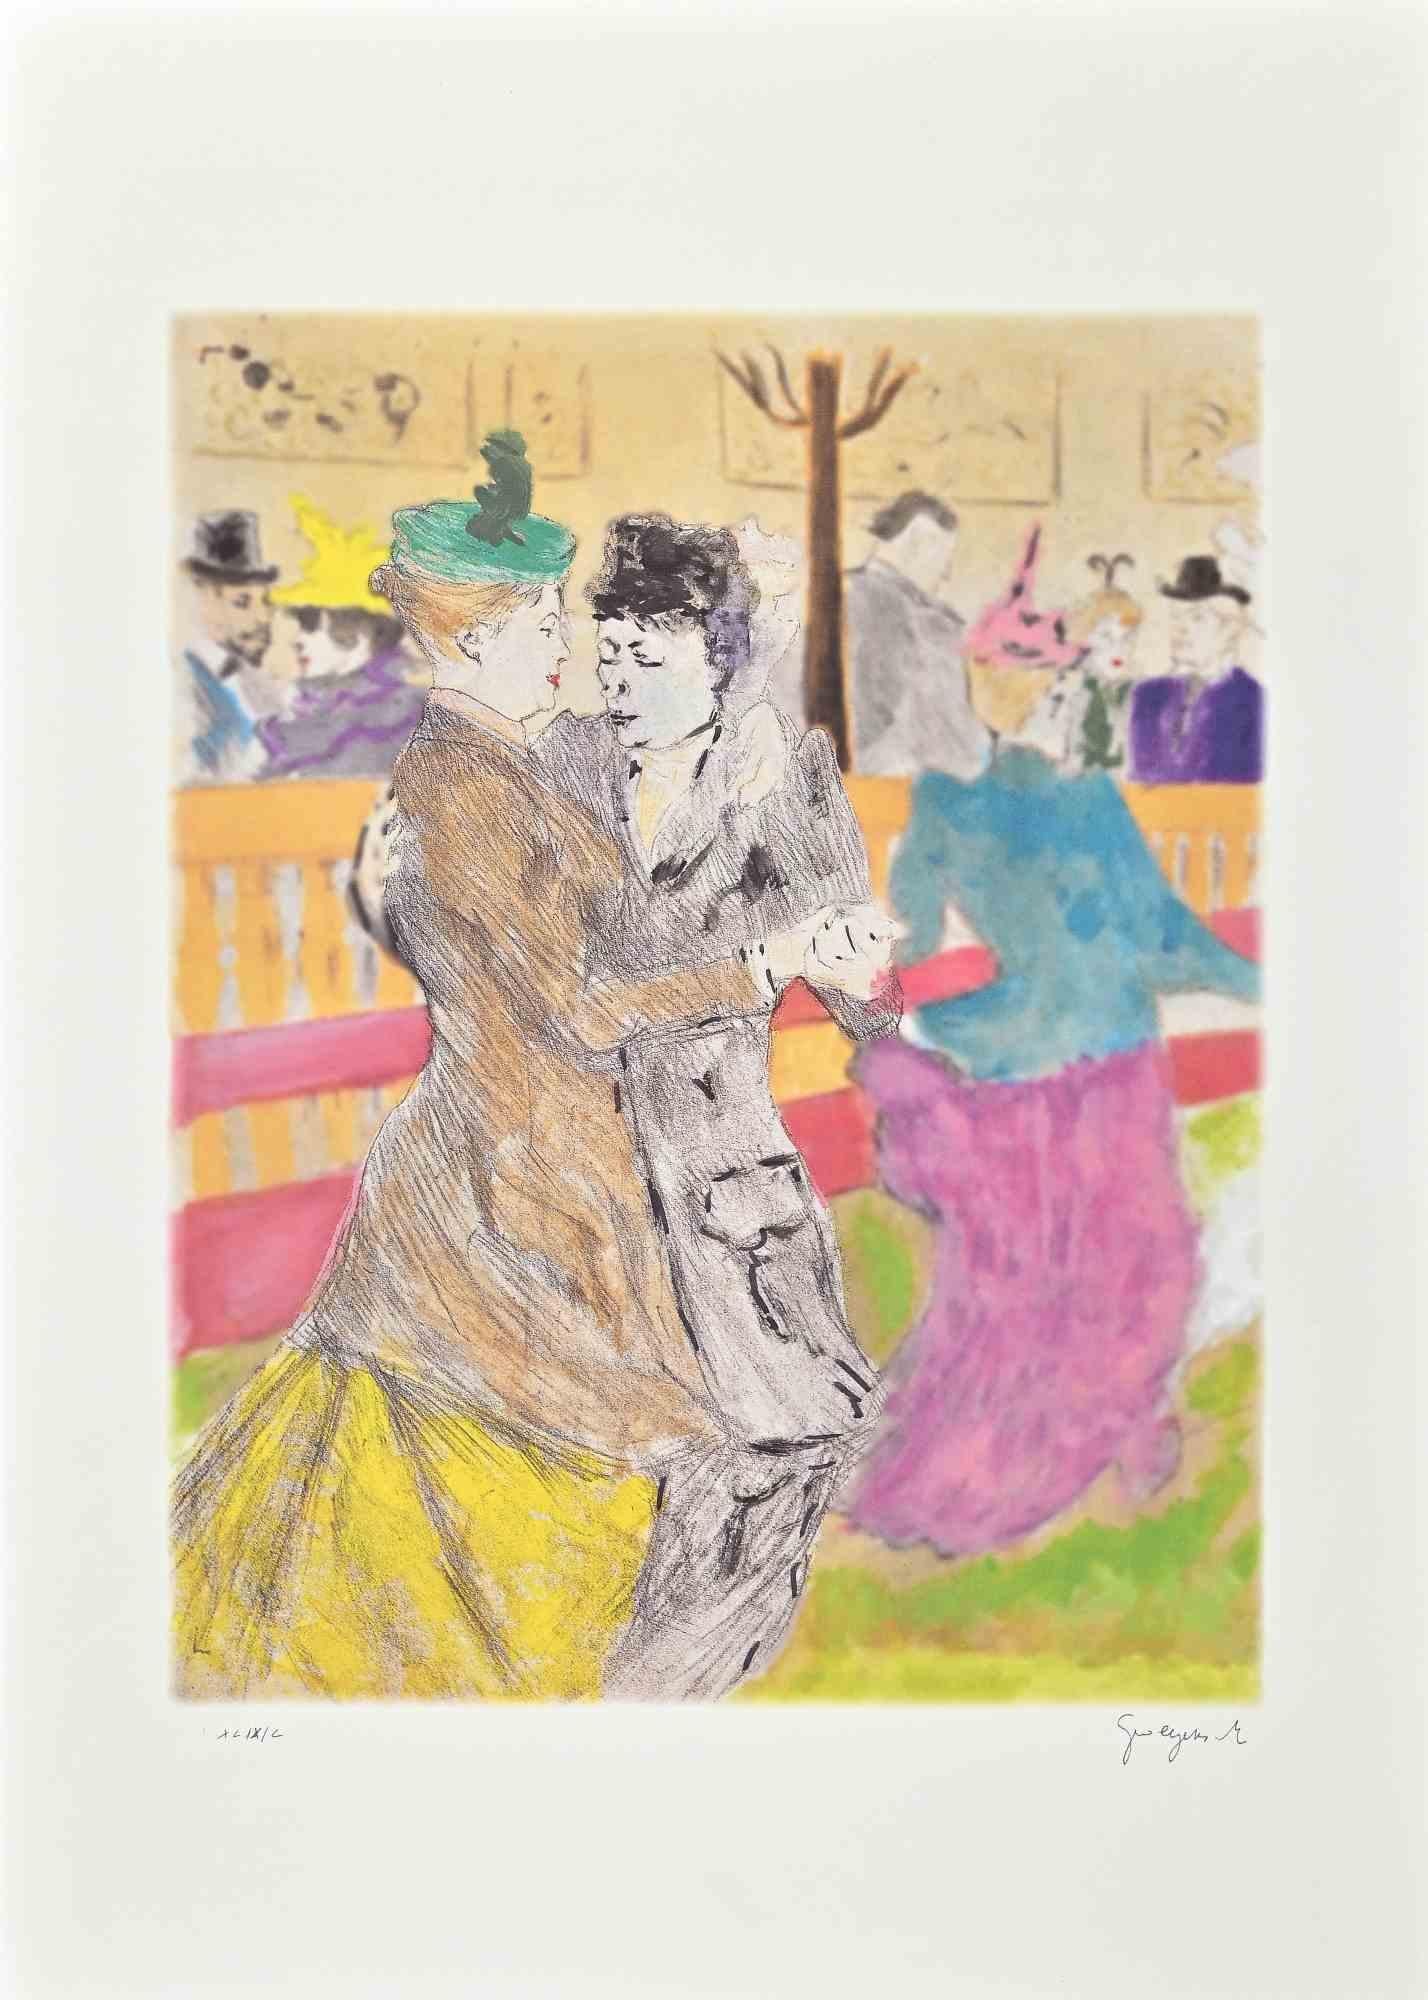 La Danse est une lithographie originale en couleur, retouchée à la main, réalisée par l'artiste belge Martine Goeyens.

Au dos, l'étiquette du certificat d'authenticité de la "Fondazione Di Paolo".

Signé à la main en bas à droite au